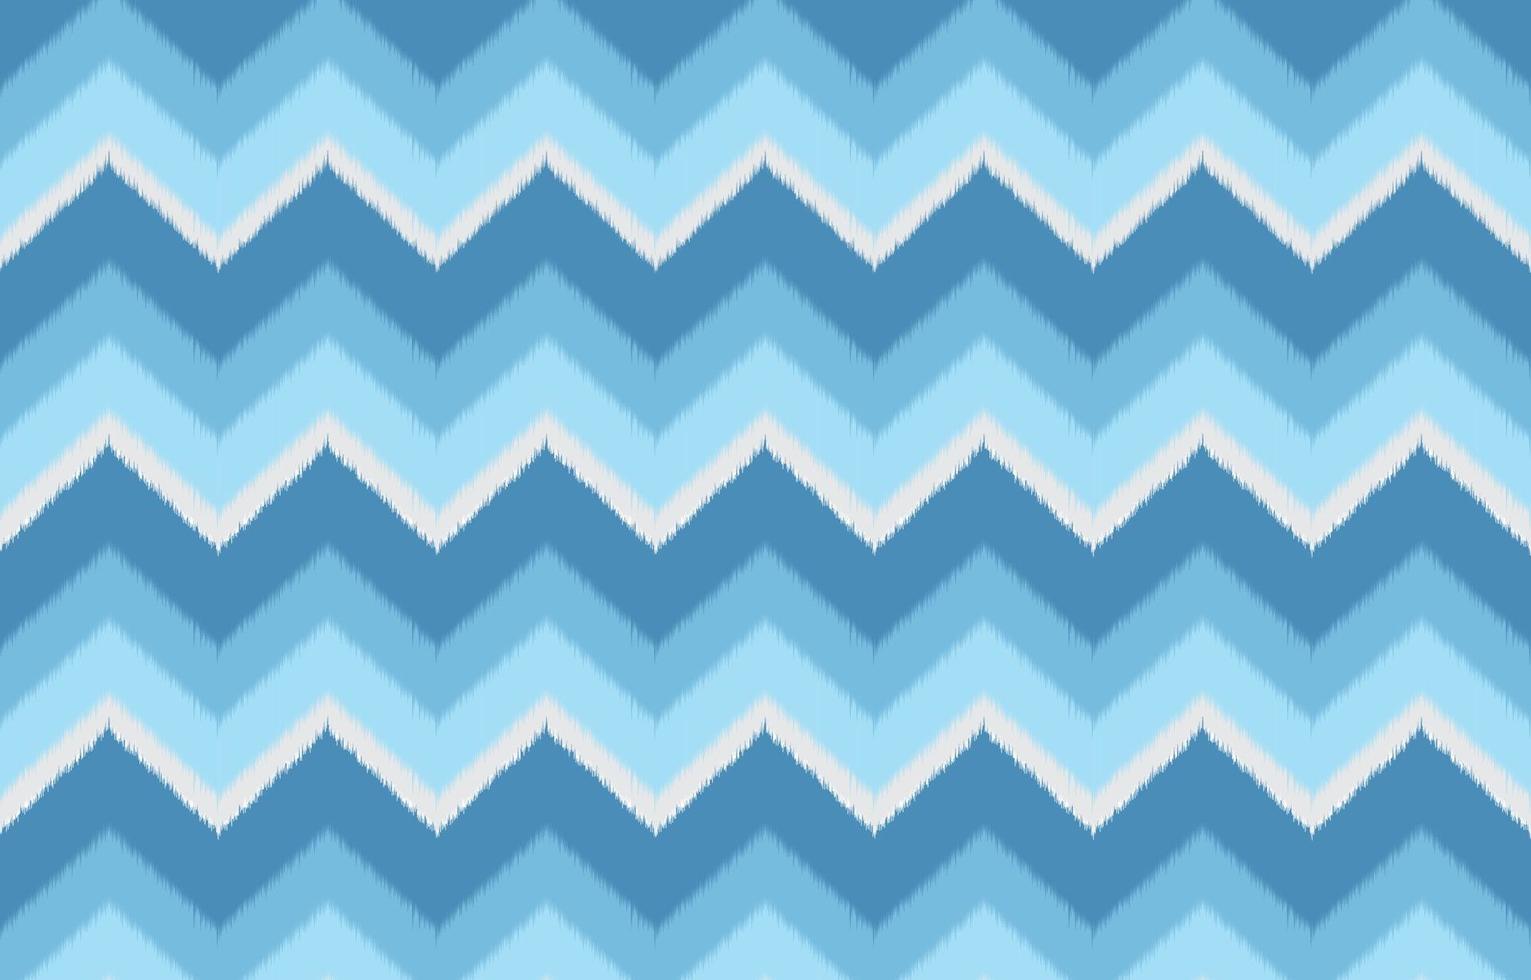 padrão étnico em zigue-zague ikat na cor azul. design para tapete, papel de parede, roupas, embrulho, batik, tecido, estilo de bordado de ilustração vetorial em temas étnicos. vetor